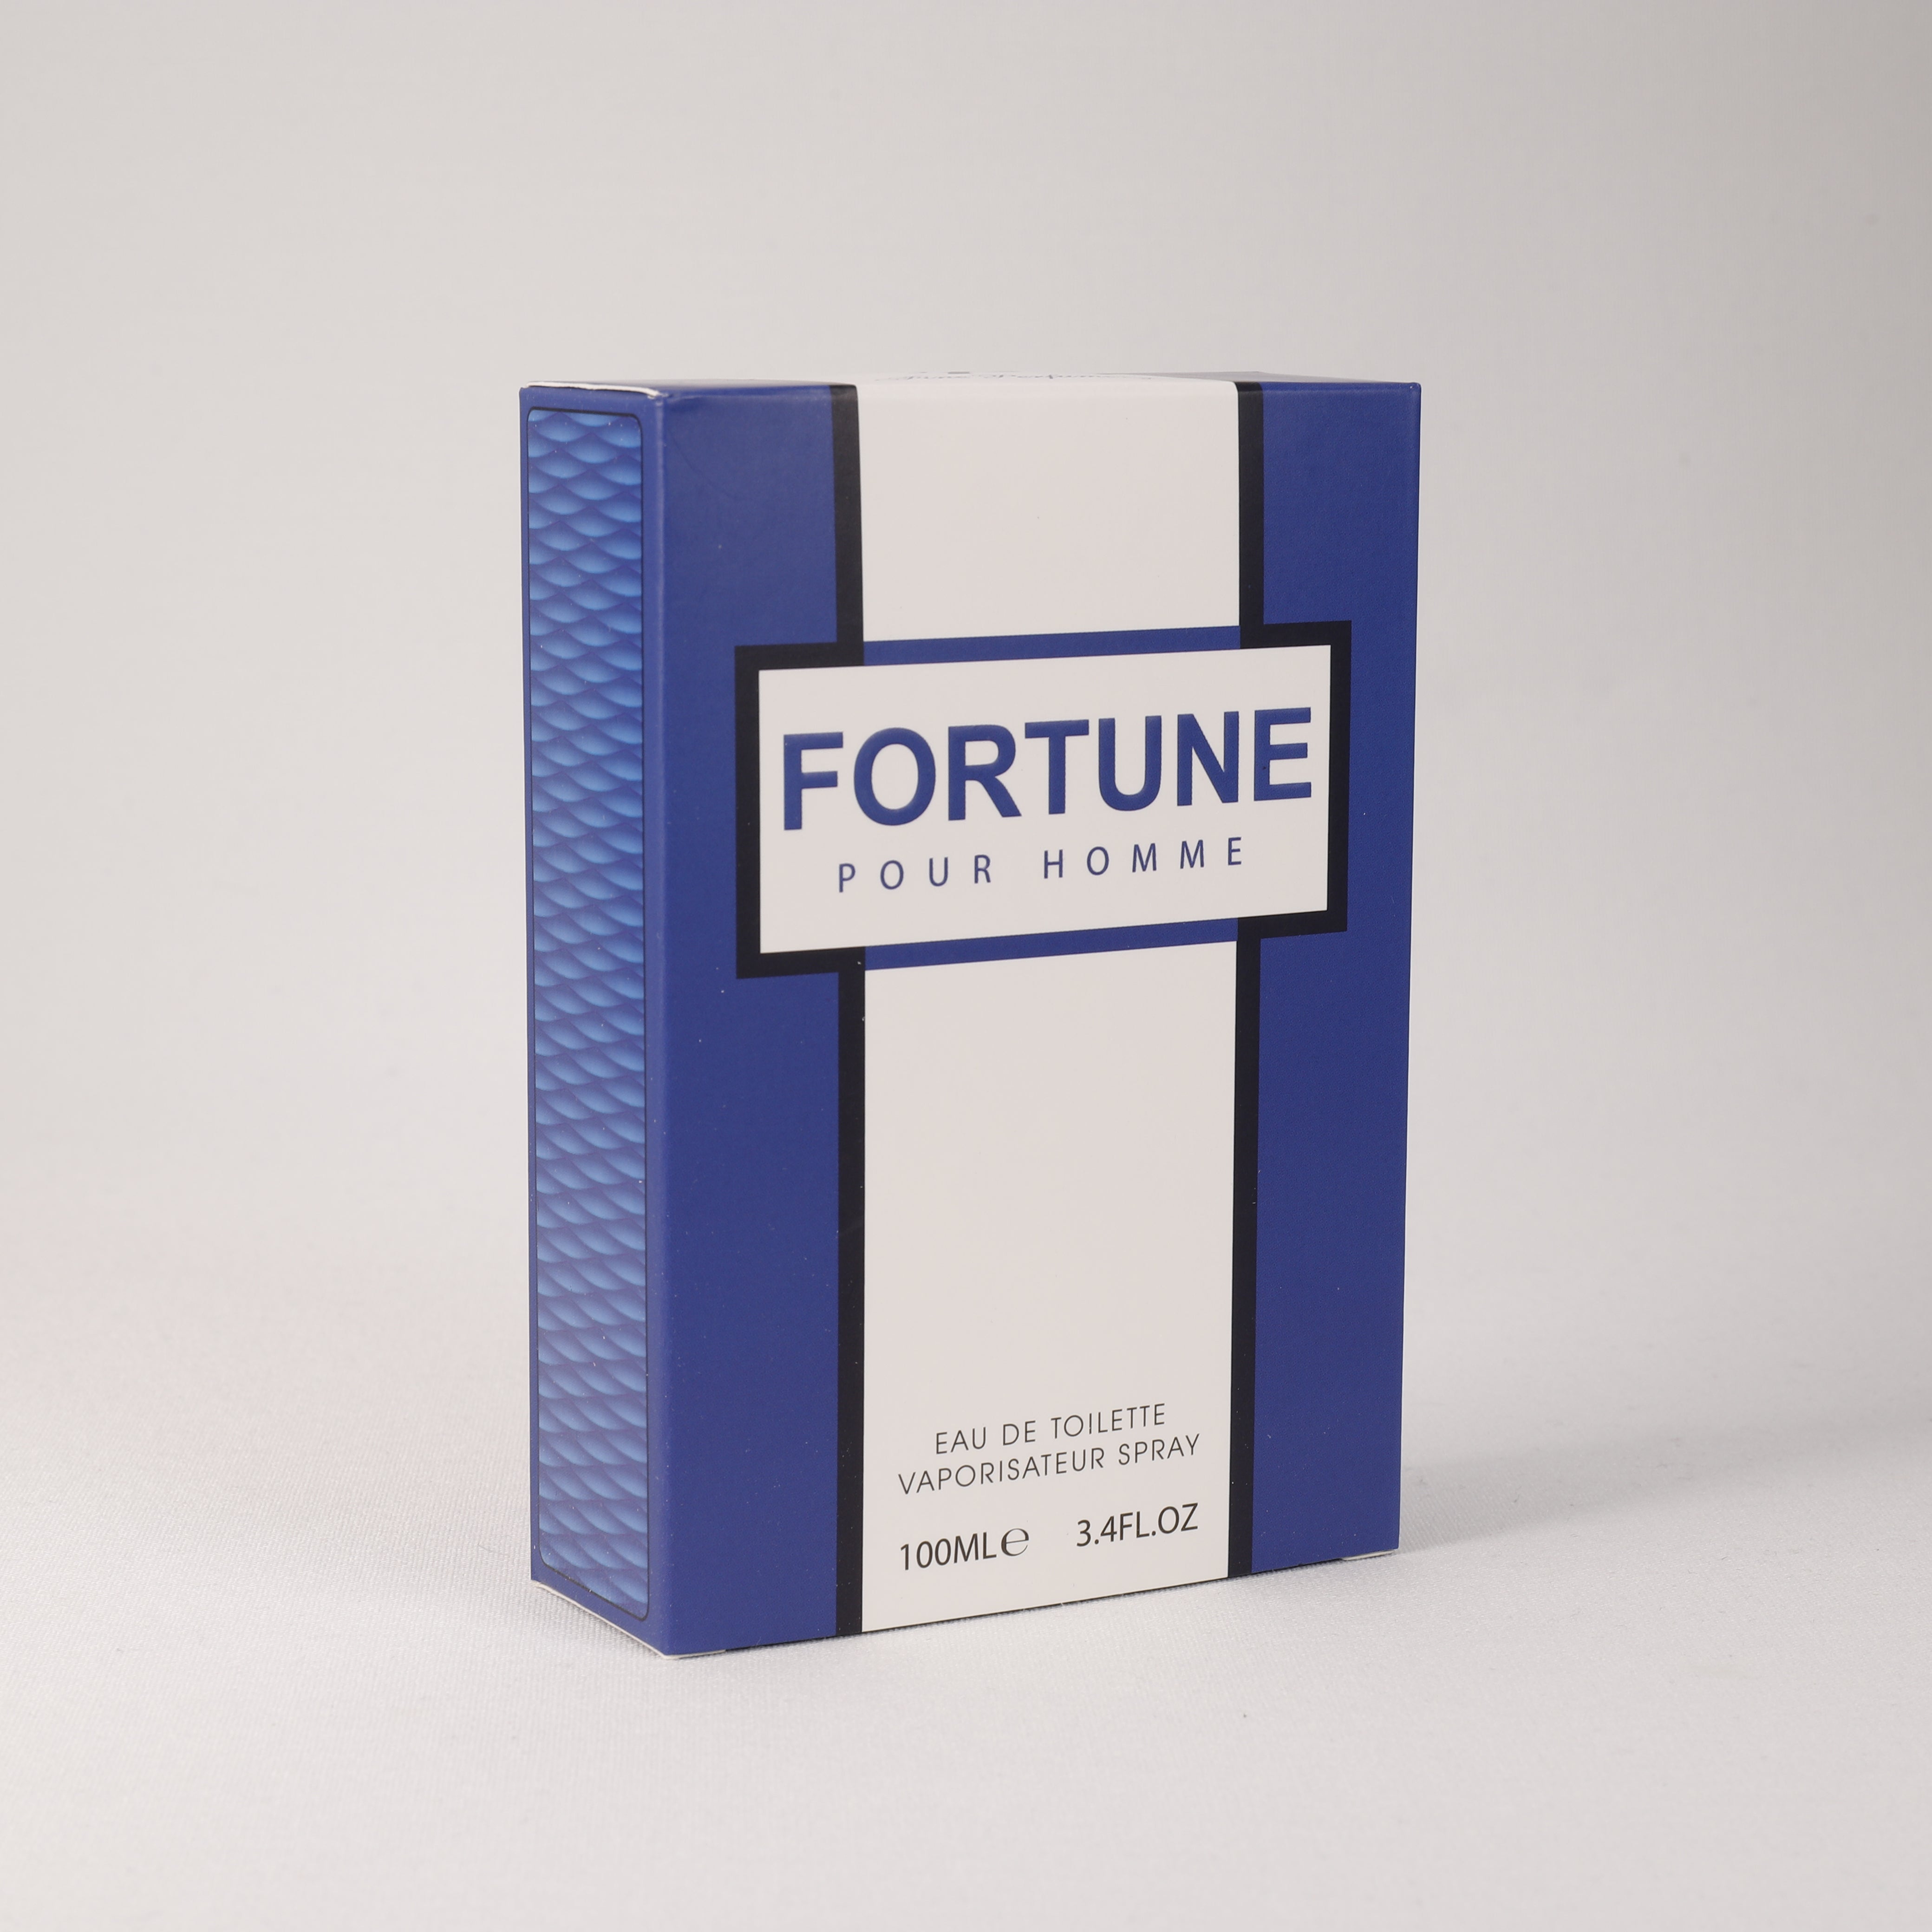 Fortune für Herren, Vaporizer mit natürlichem Spray, 100 ml Duft, Parfum, TOP Parfüm, NEU OVP